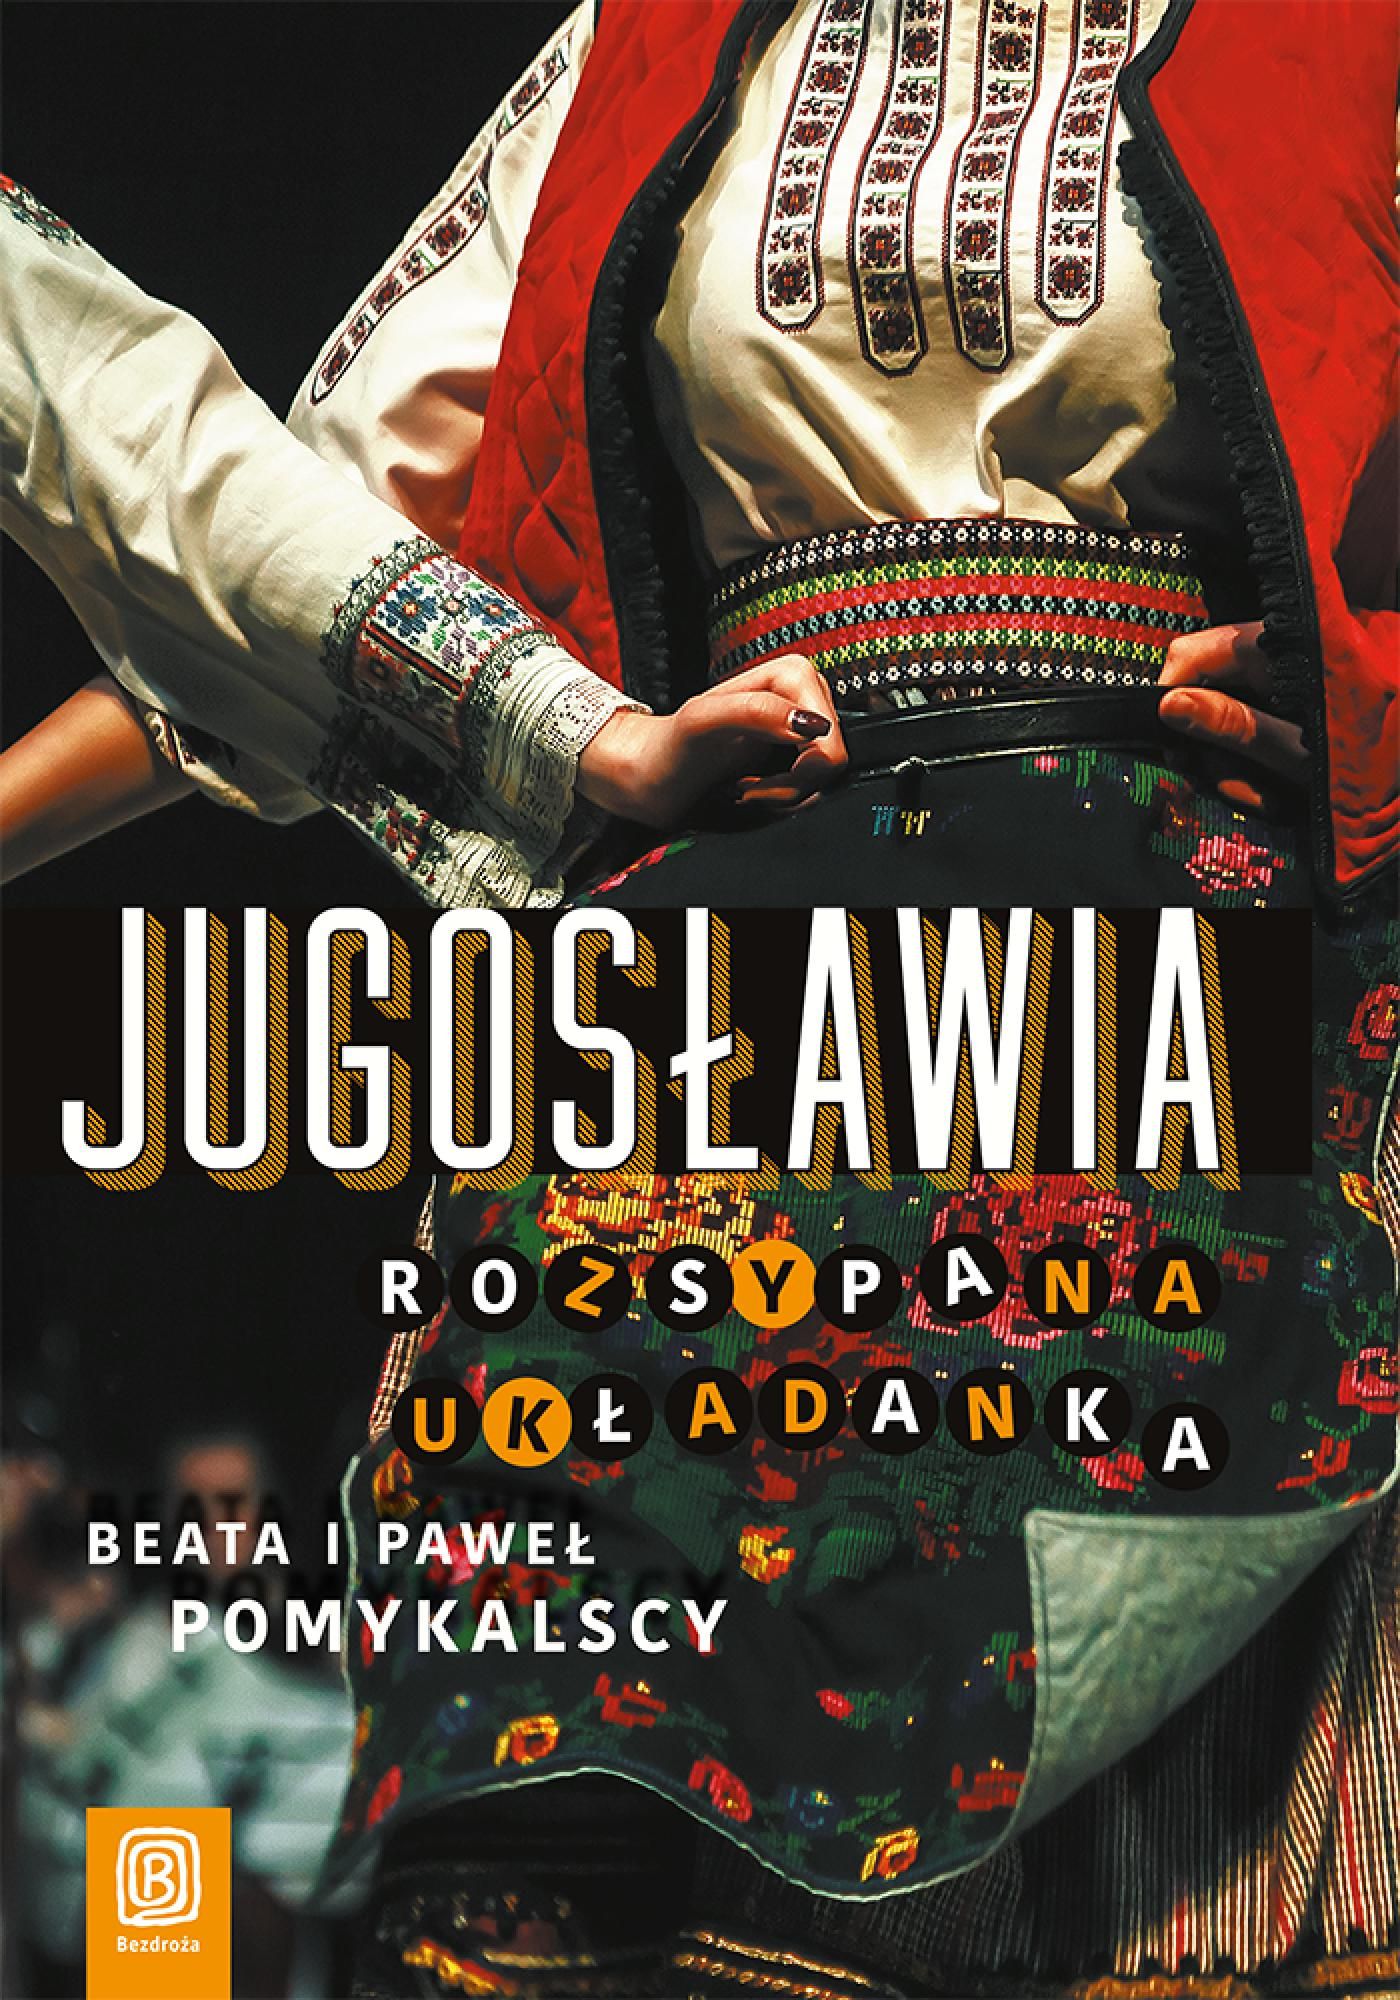 „Jugosławia. Rozsypana układanka”, Beat, Paweł Pomykalscy, 